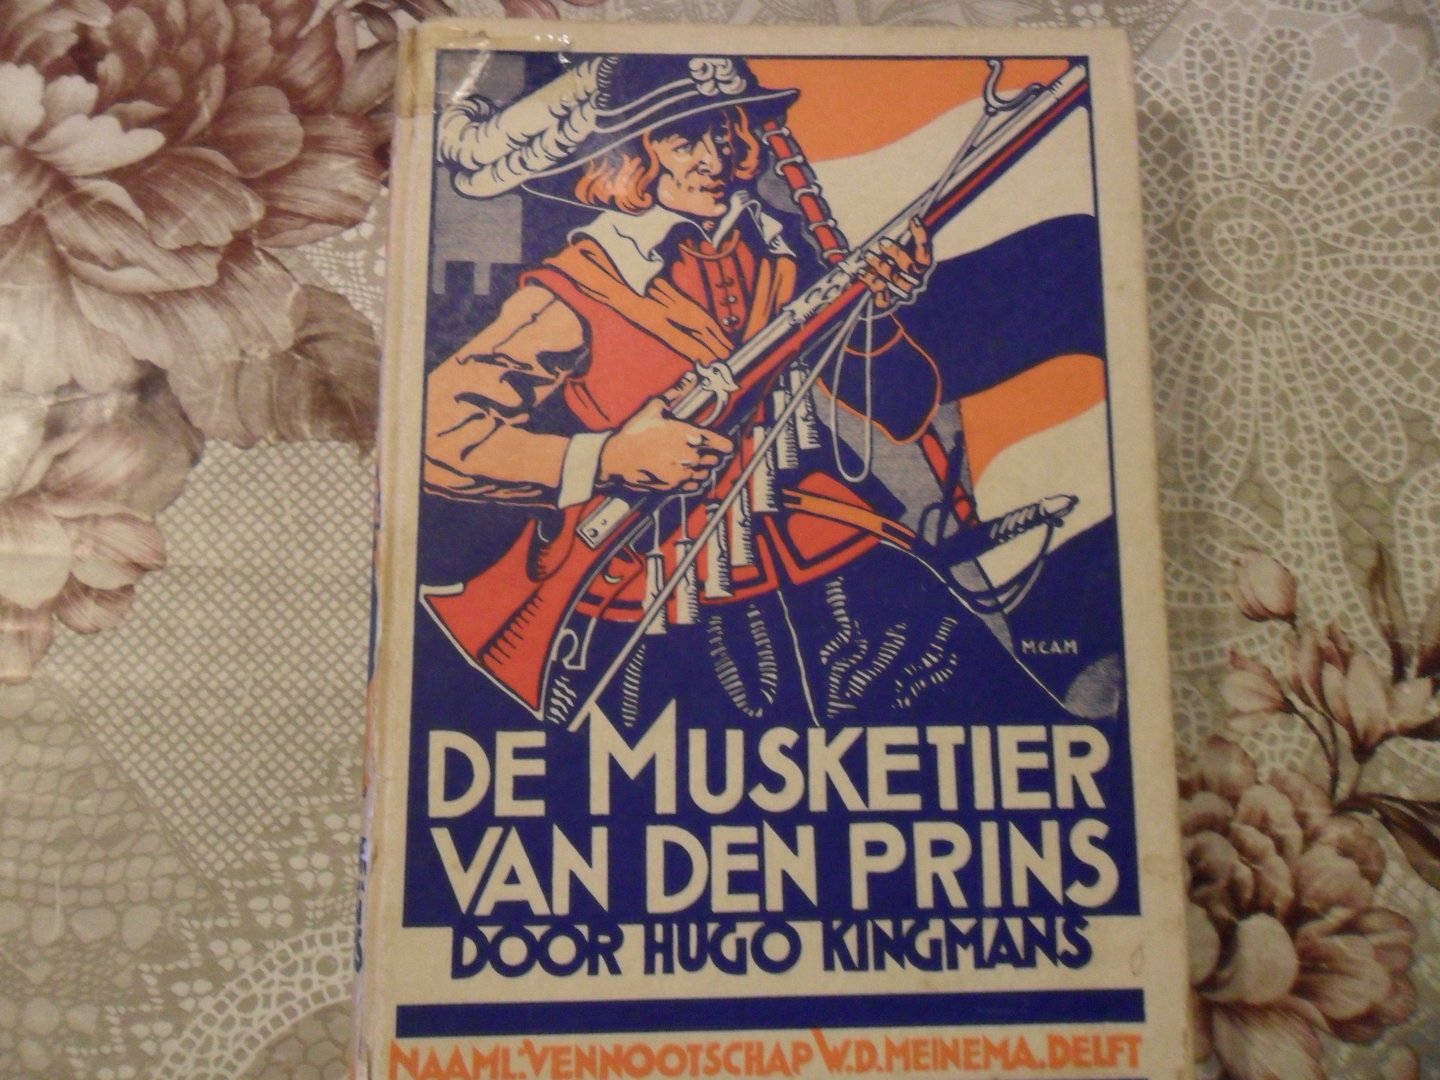 Kingmans Hugo - De musketier van den prins